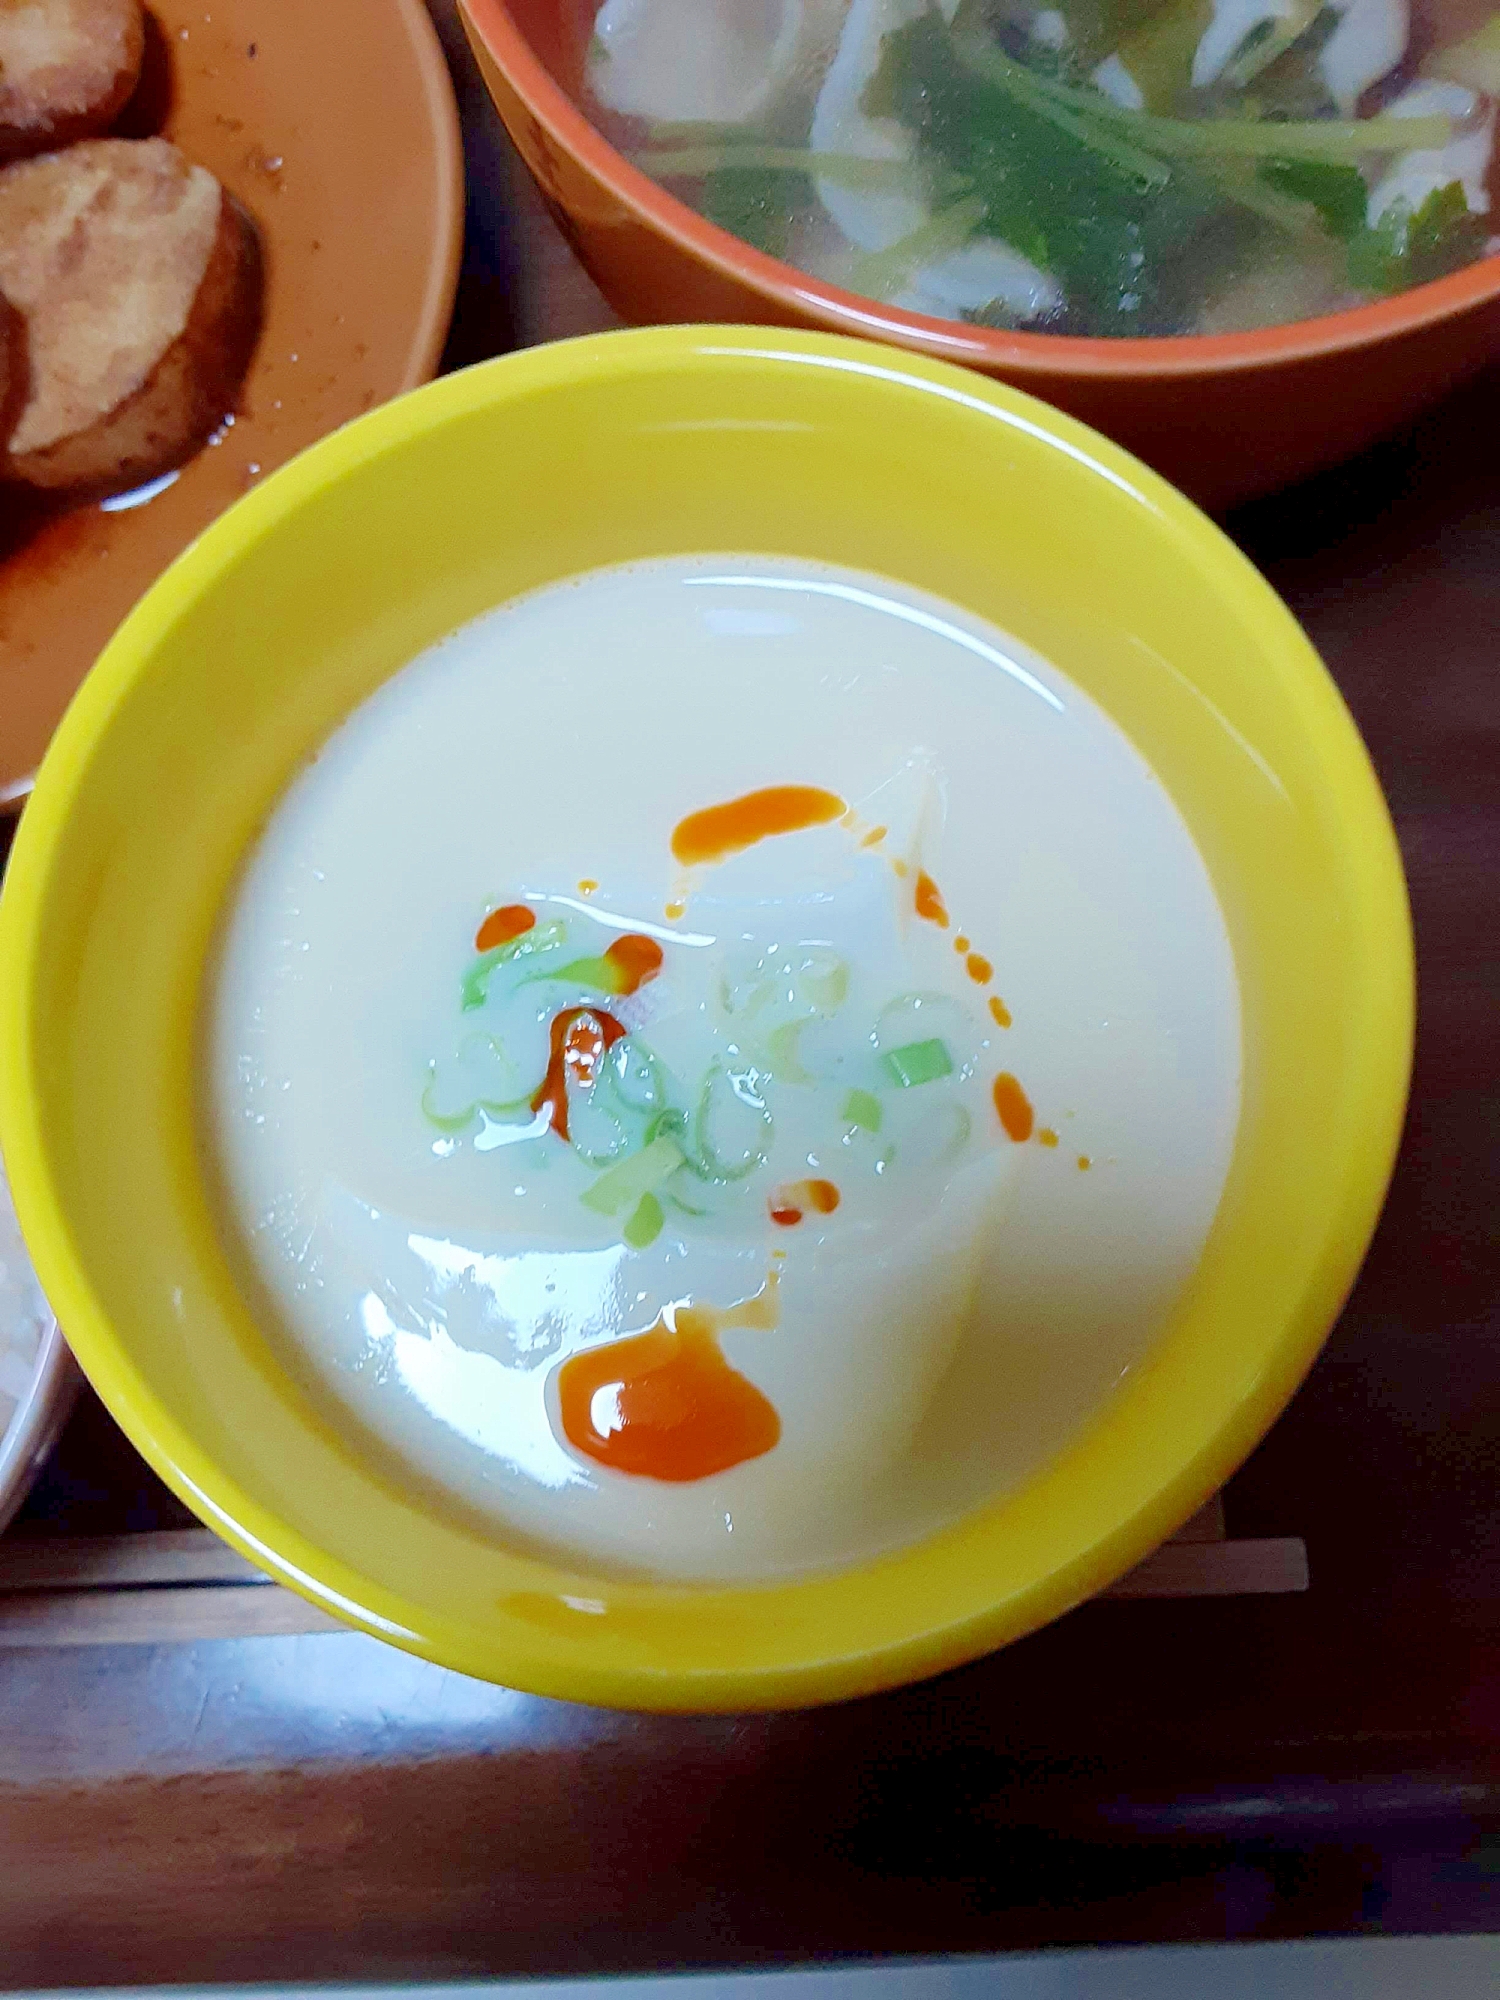 豆腐のスープ